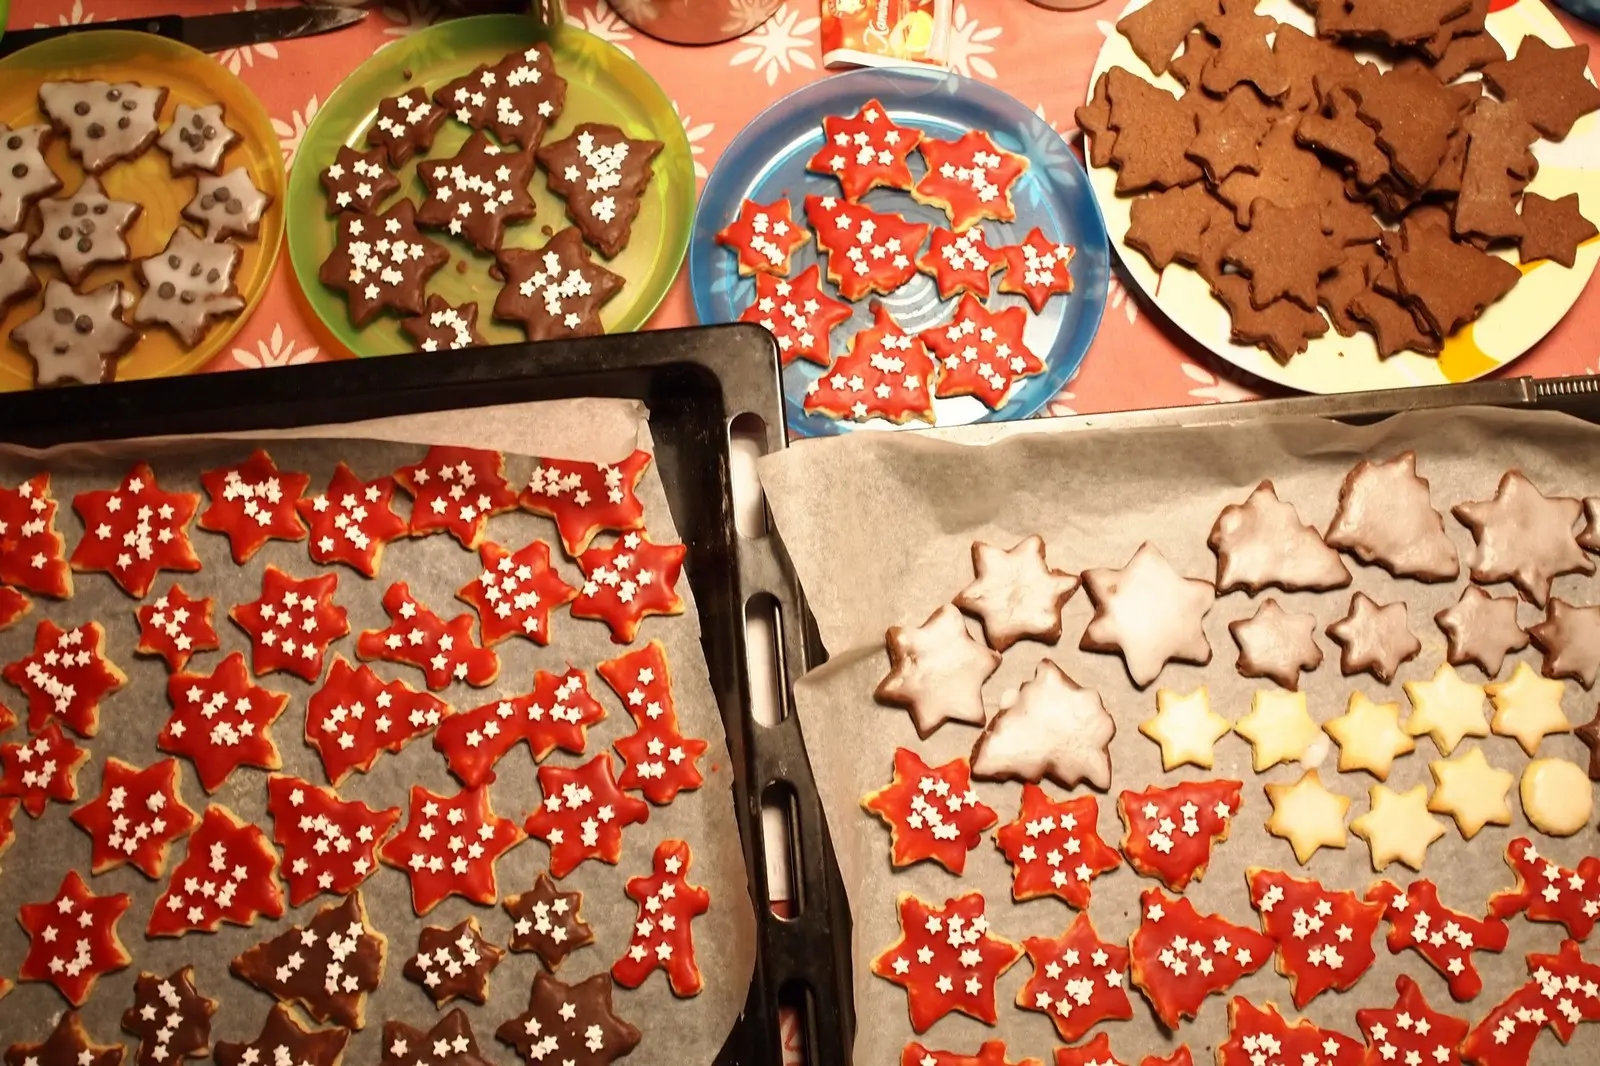 Christmas cookies in Germany / Weihnachten Plätzchen